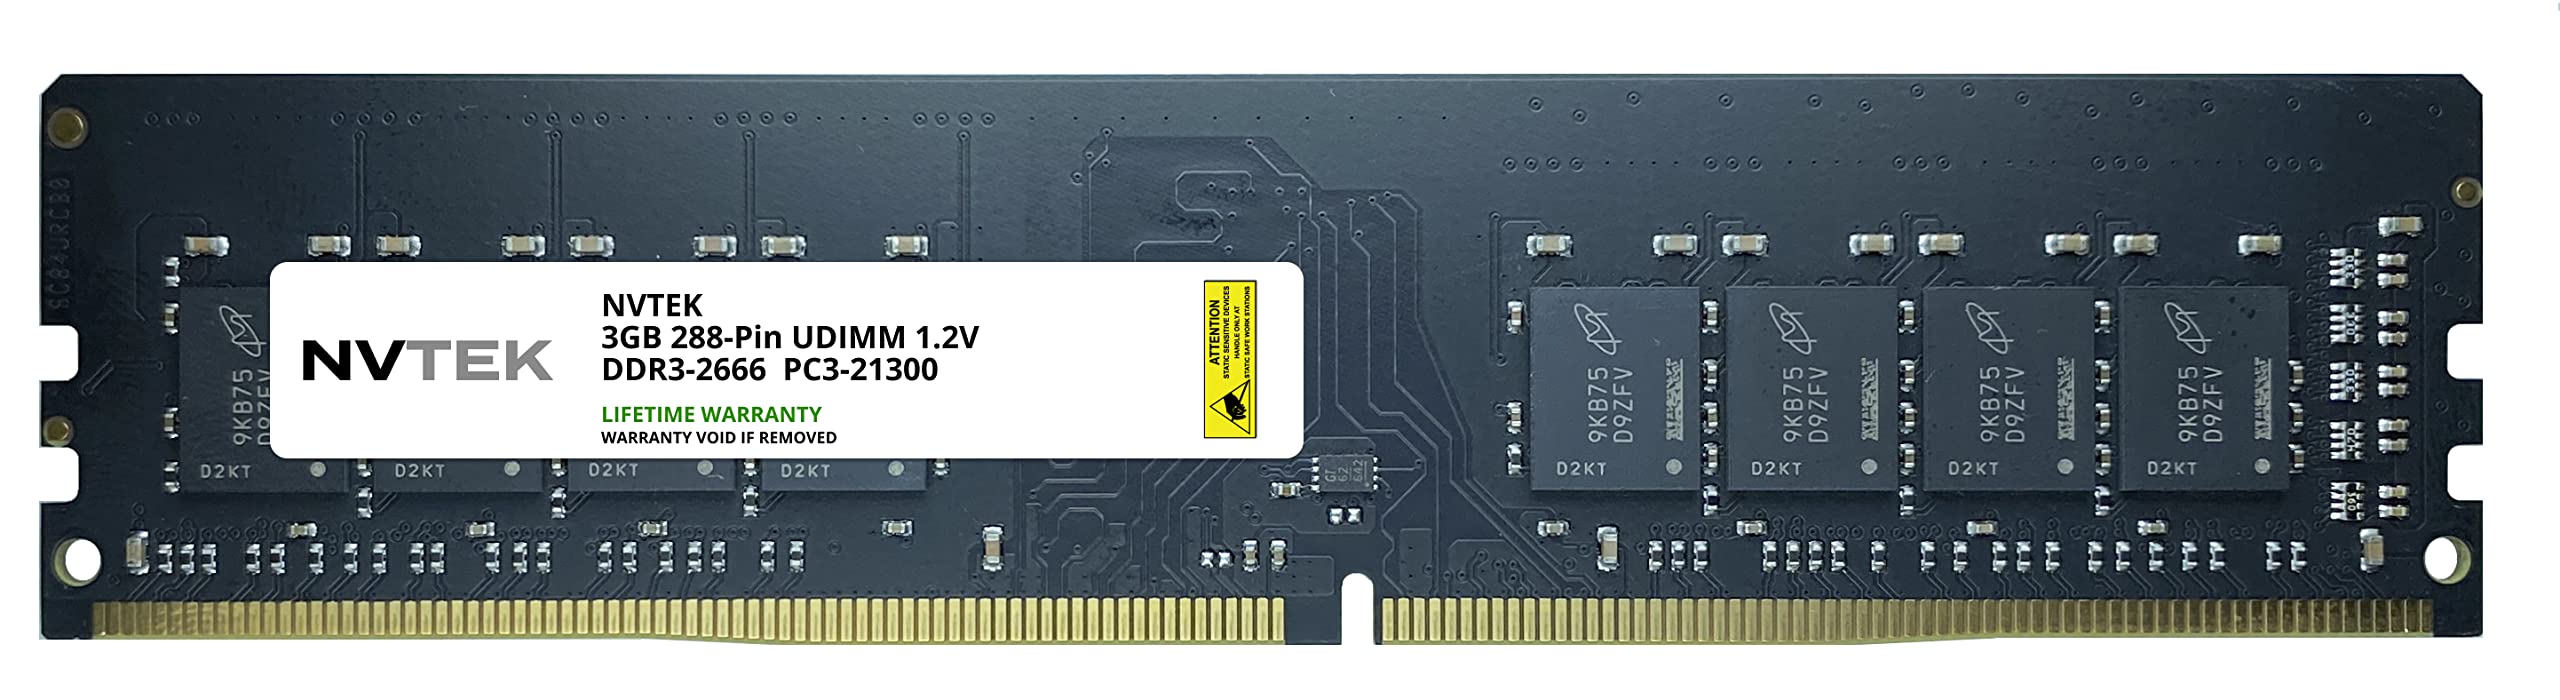 NVTEK 32GB DDR4-2666 PC4-21300 非ECC UDIMM デスクトップ PC RAM メモリアップグレード並行輸入品